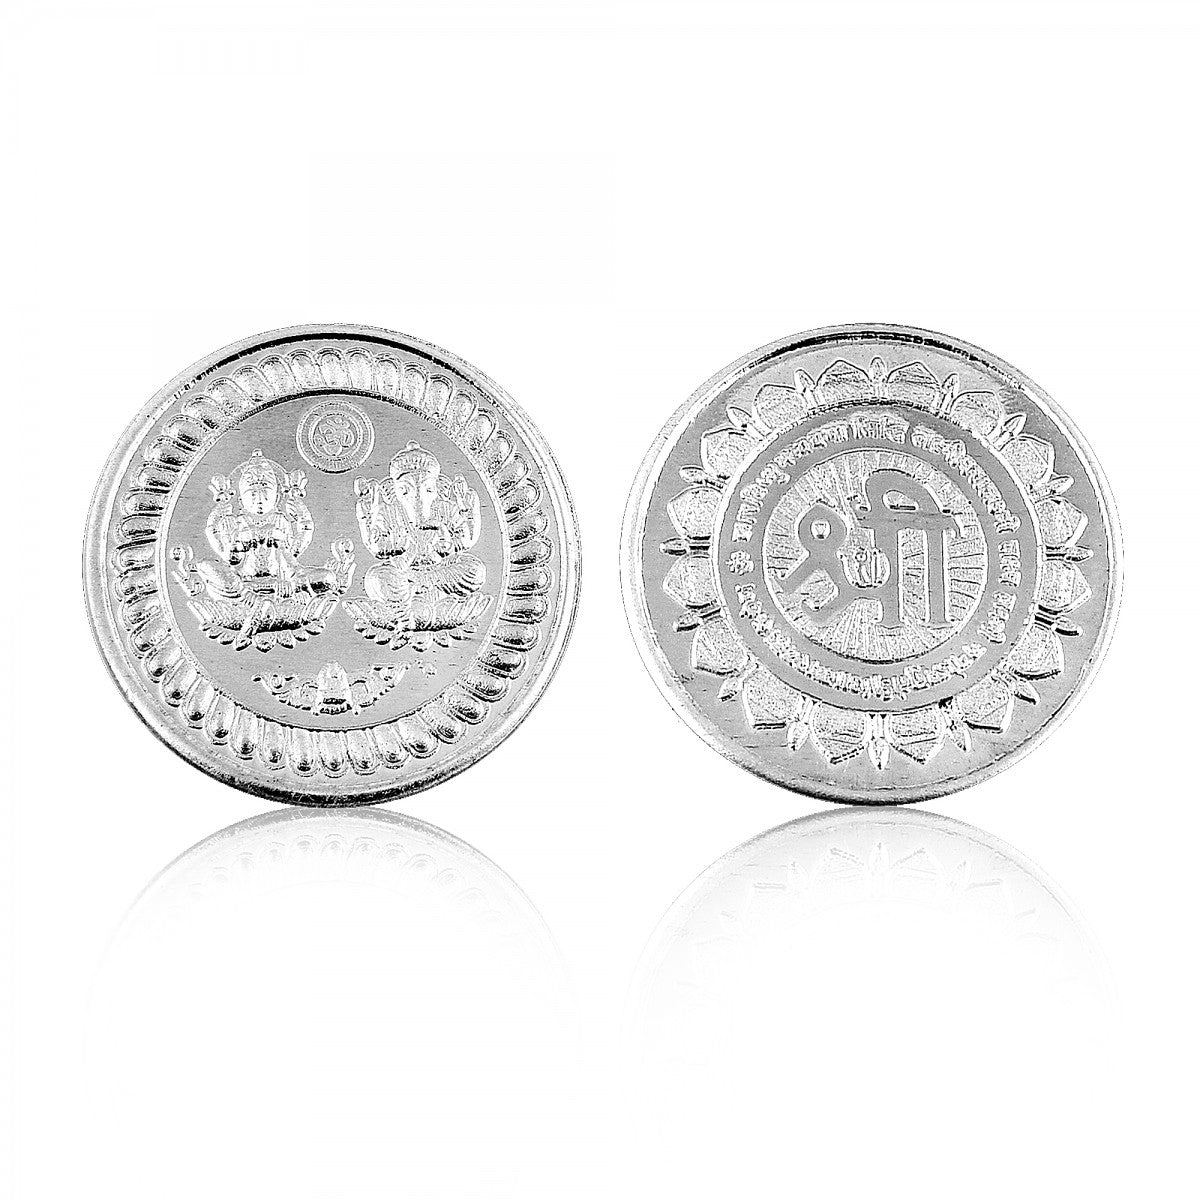 10 Gram Silver Coin